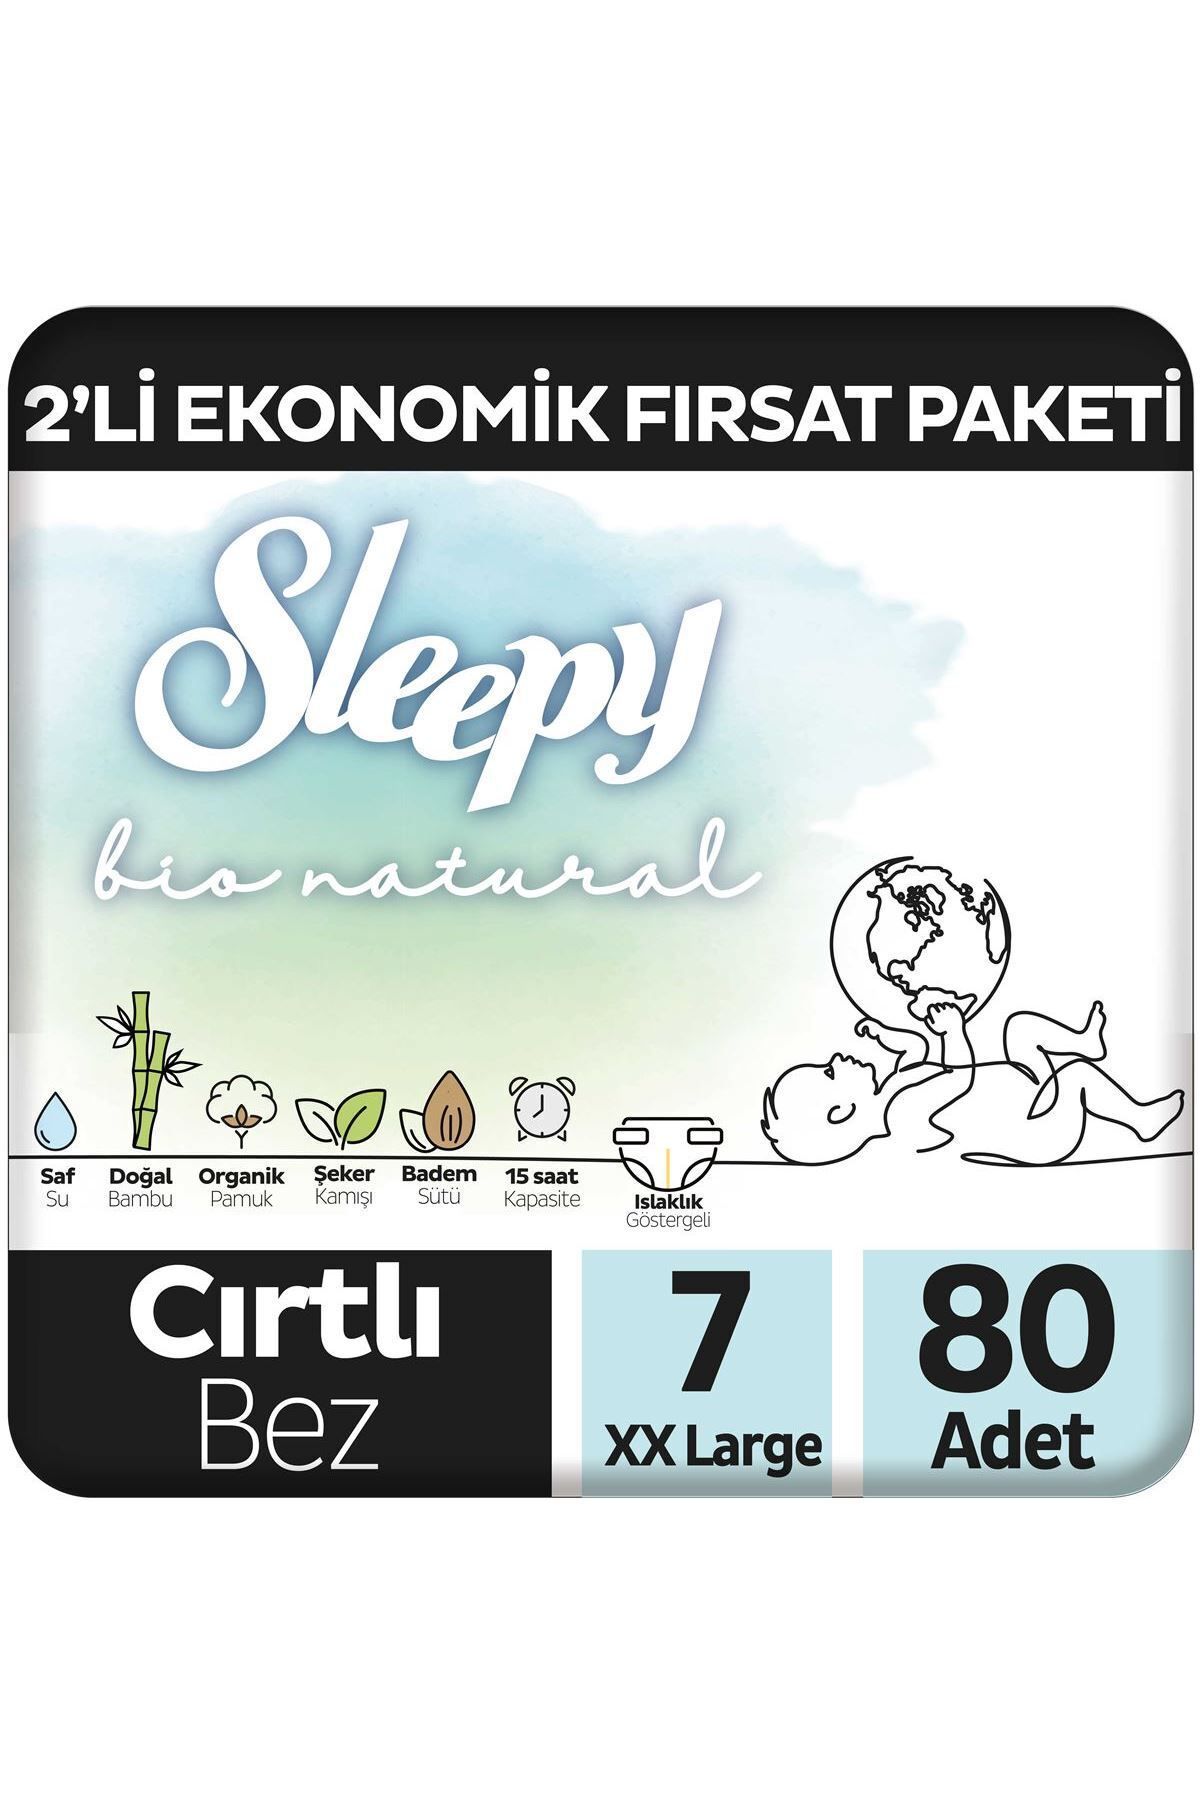 Sleepy Bio Natural 2'Li Ekonomik Fırsat Paketi Bebek Bezi 7 Numara Xxlarge 80 Adet